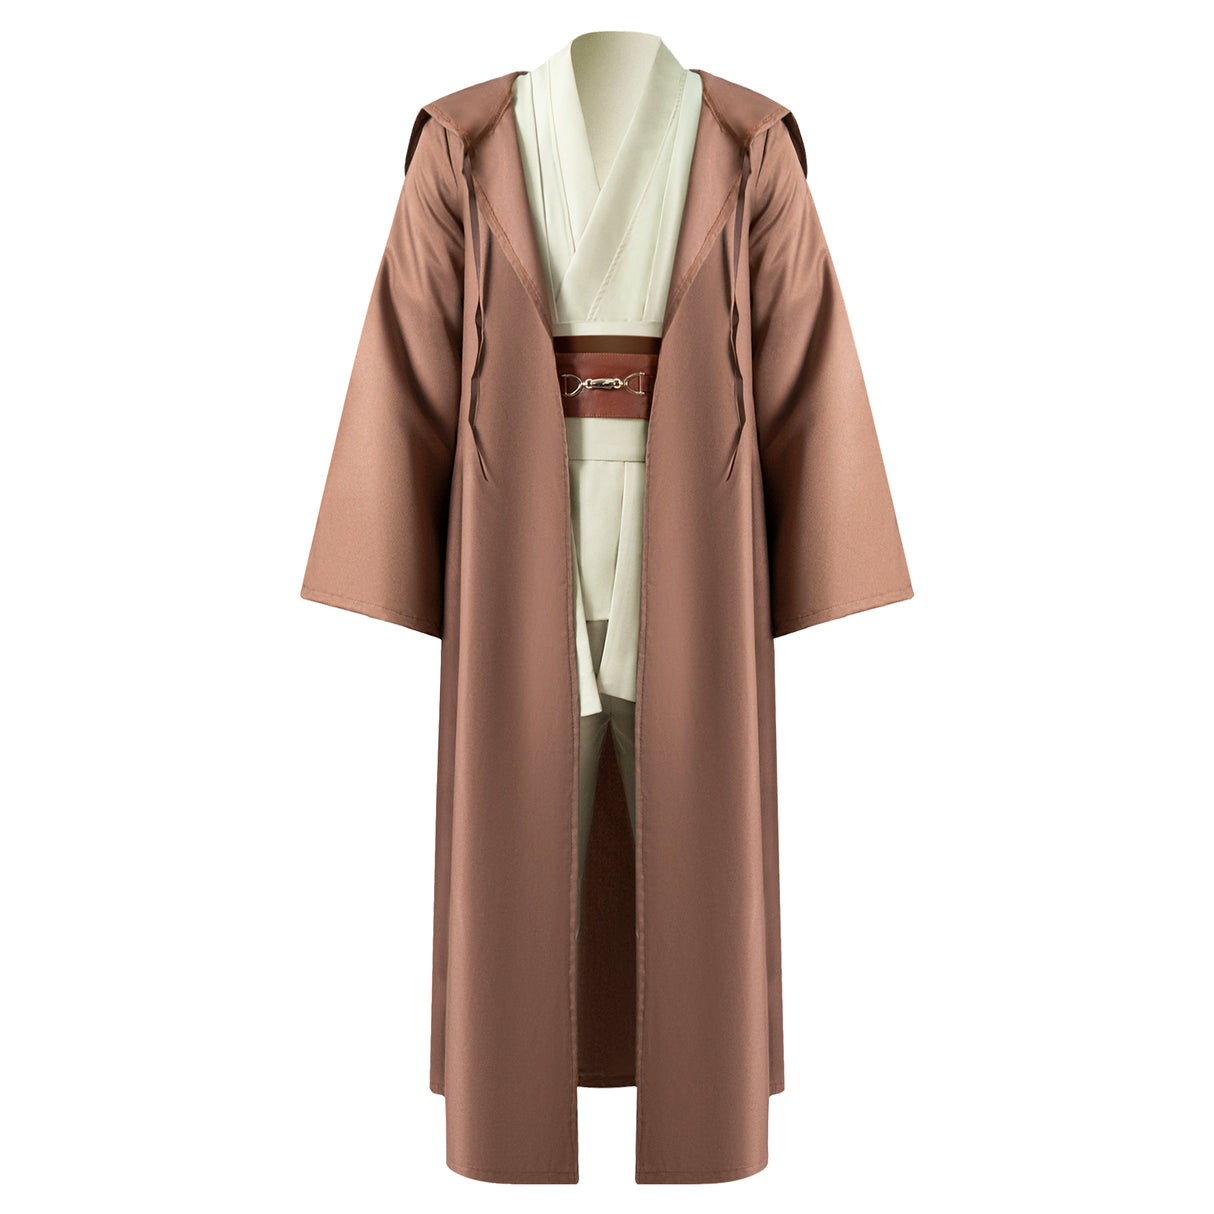 Jedi/Sith Robe